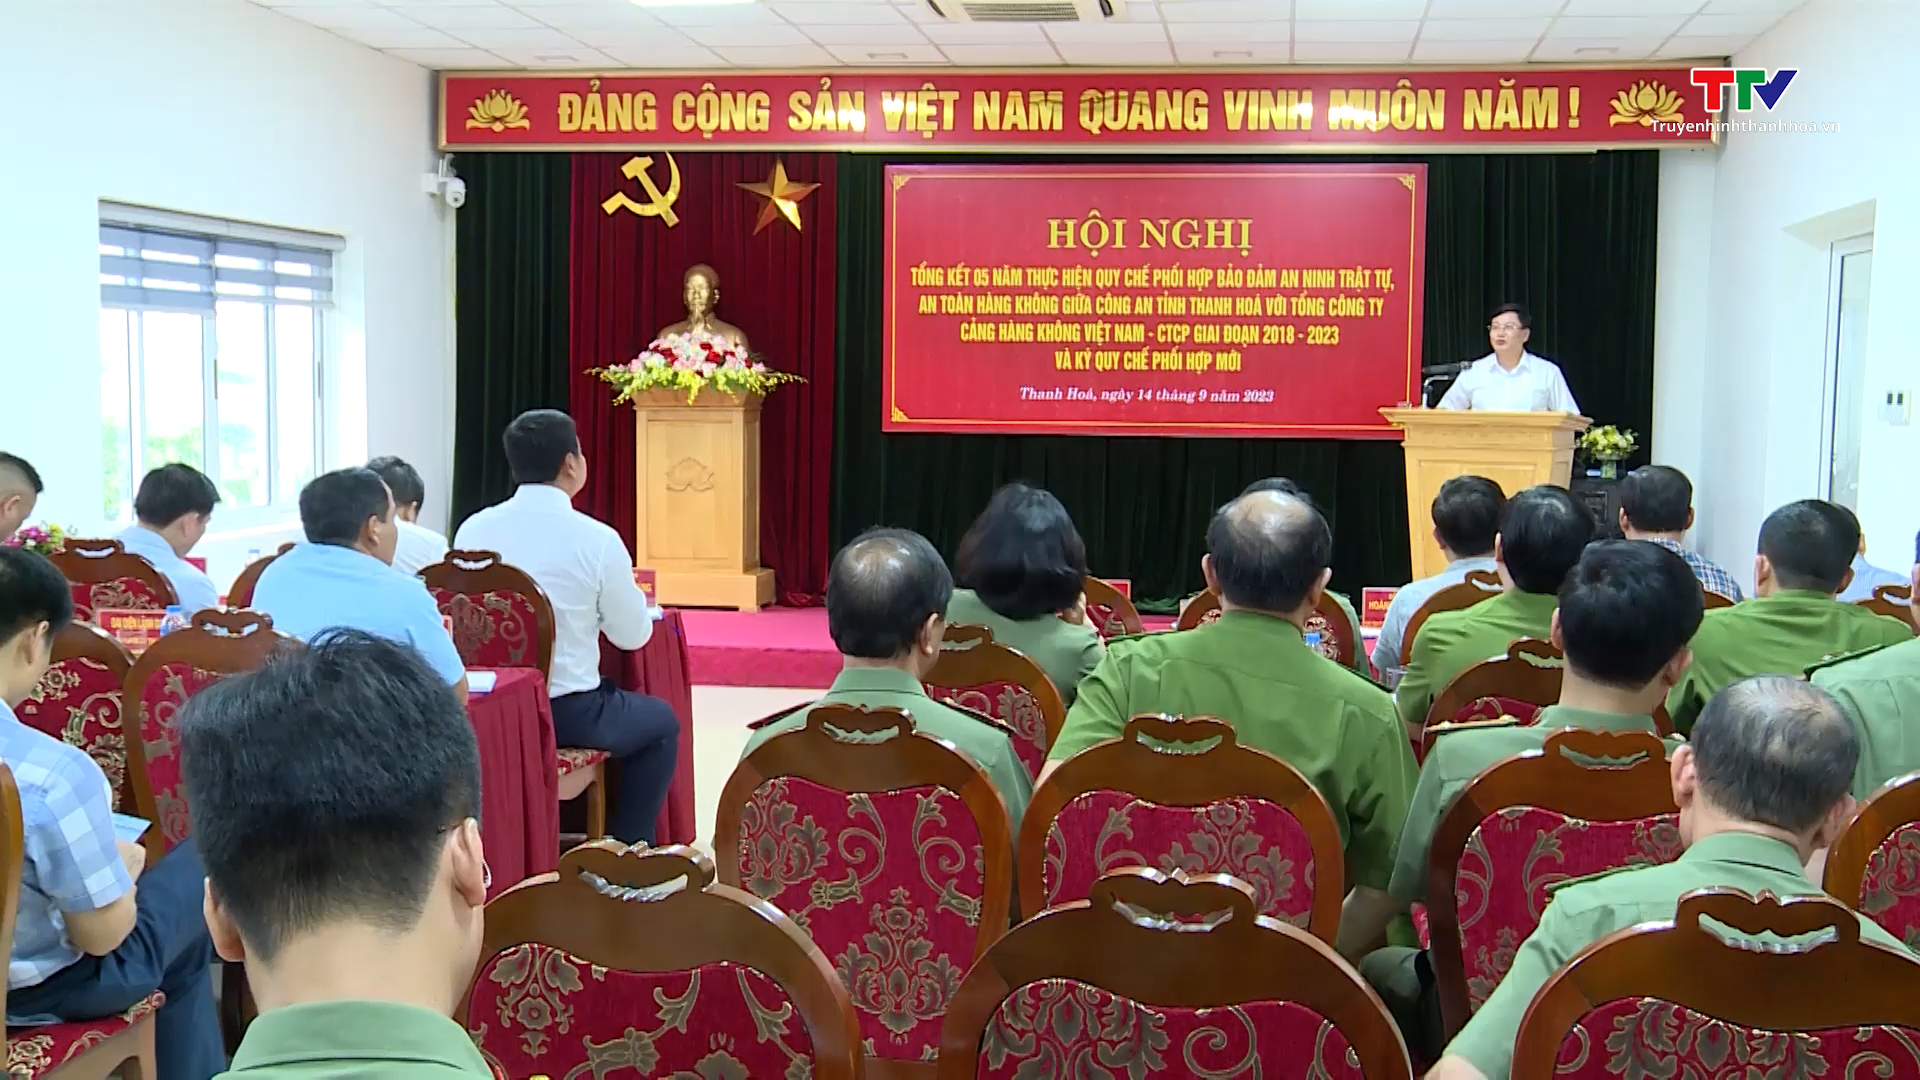 Tổng kết 5 năm thực hiện Quy chế phối hợp giữa Công an tỉnh Thanh Hóa với Tổng Công ty Cảng hàng không Việt Nam - CTCP - Ảnh 2.